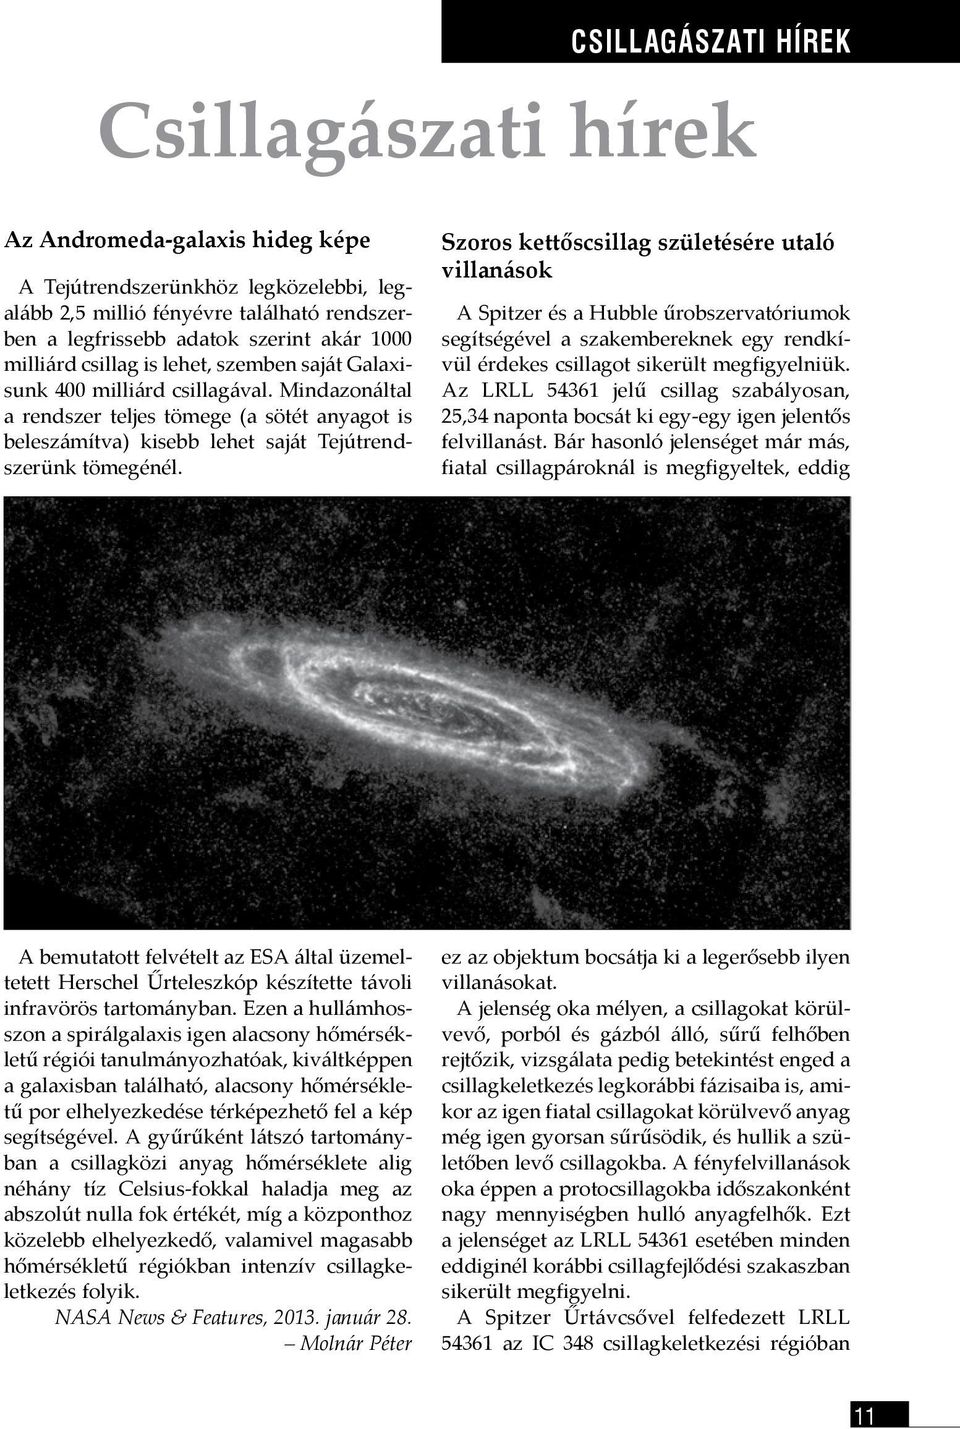 Szoros kettőscsillag születésére utaló villanások A Spitzer és a Hubble űrobszervatóriumok segítségével a szakembereknek egy rendkívül érdekes csillagot sikerült megfigyelniük.